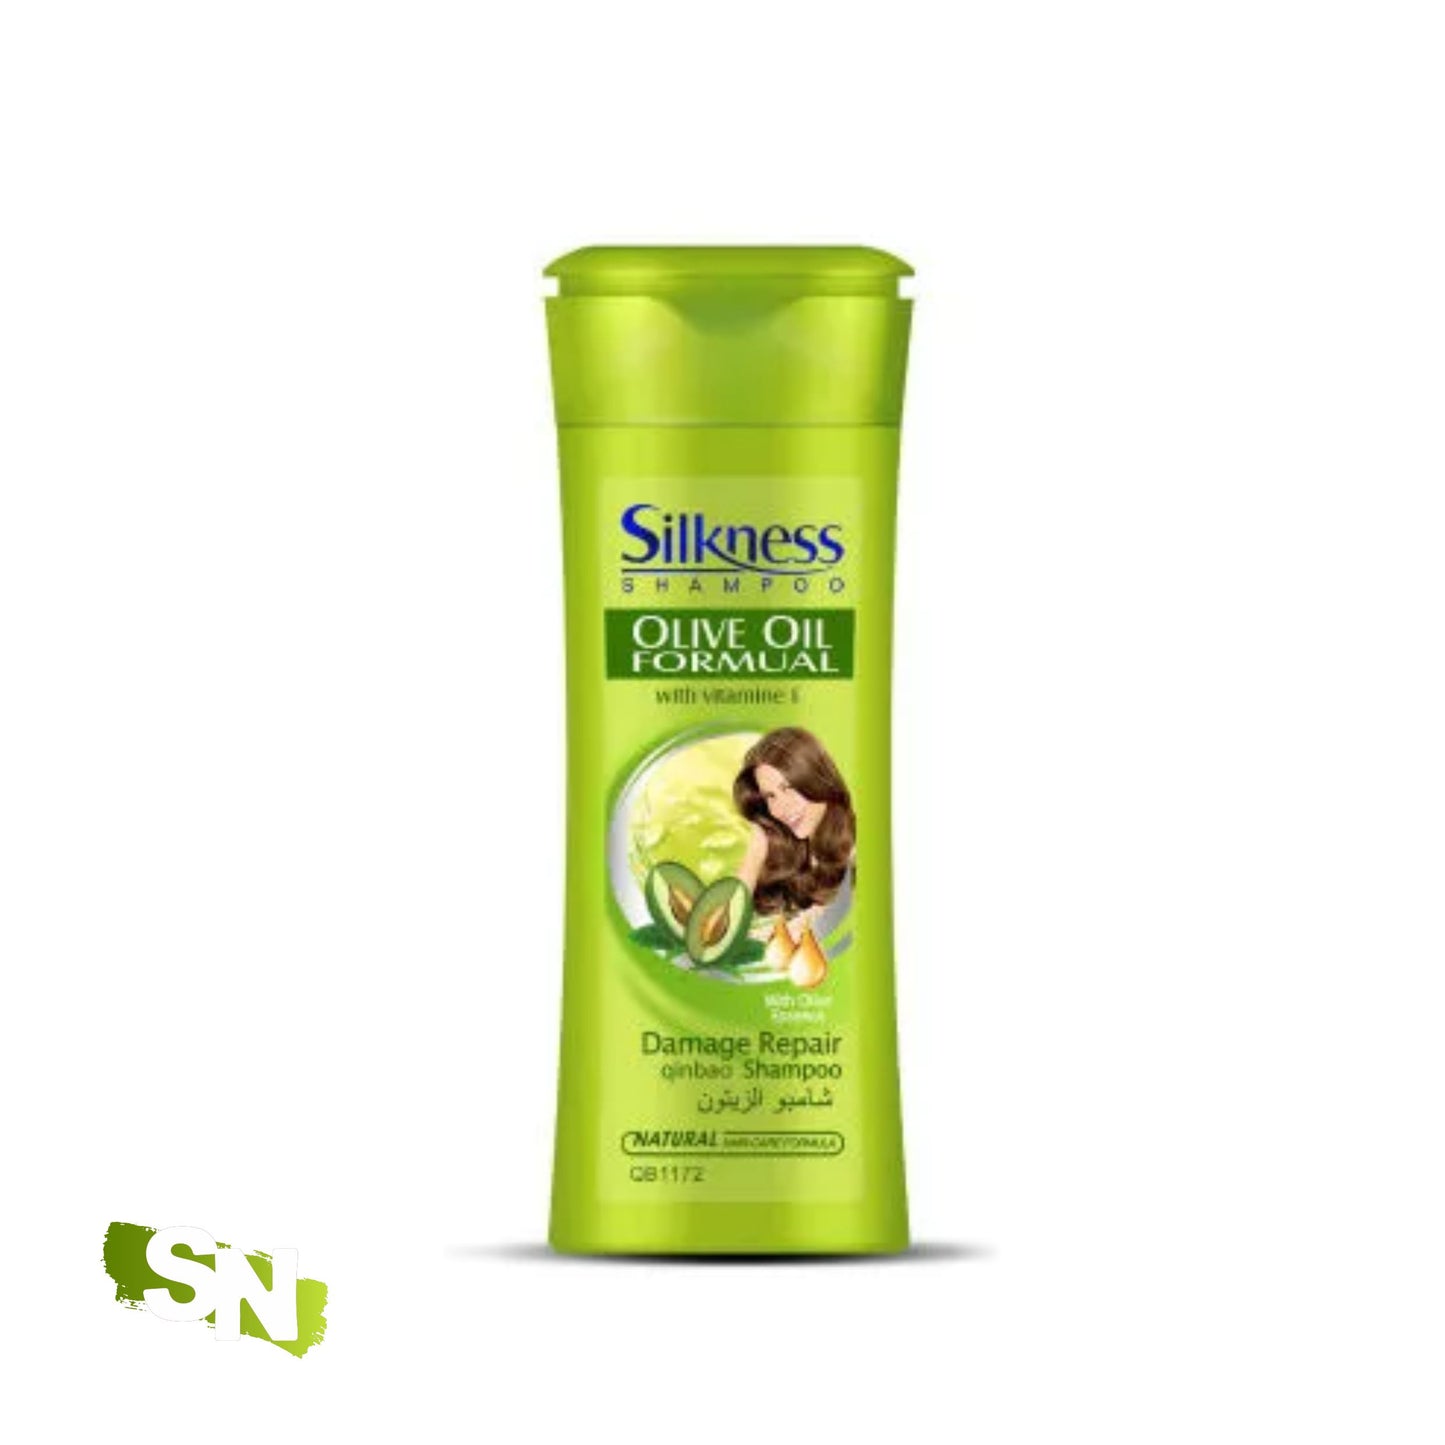 Silknees Shampoo | 400g